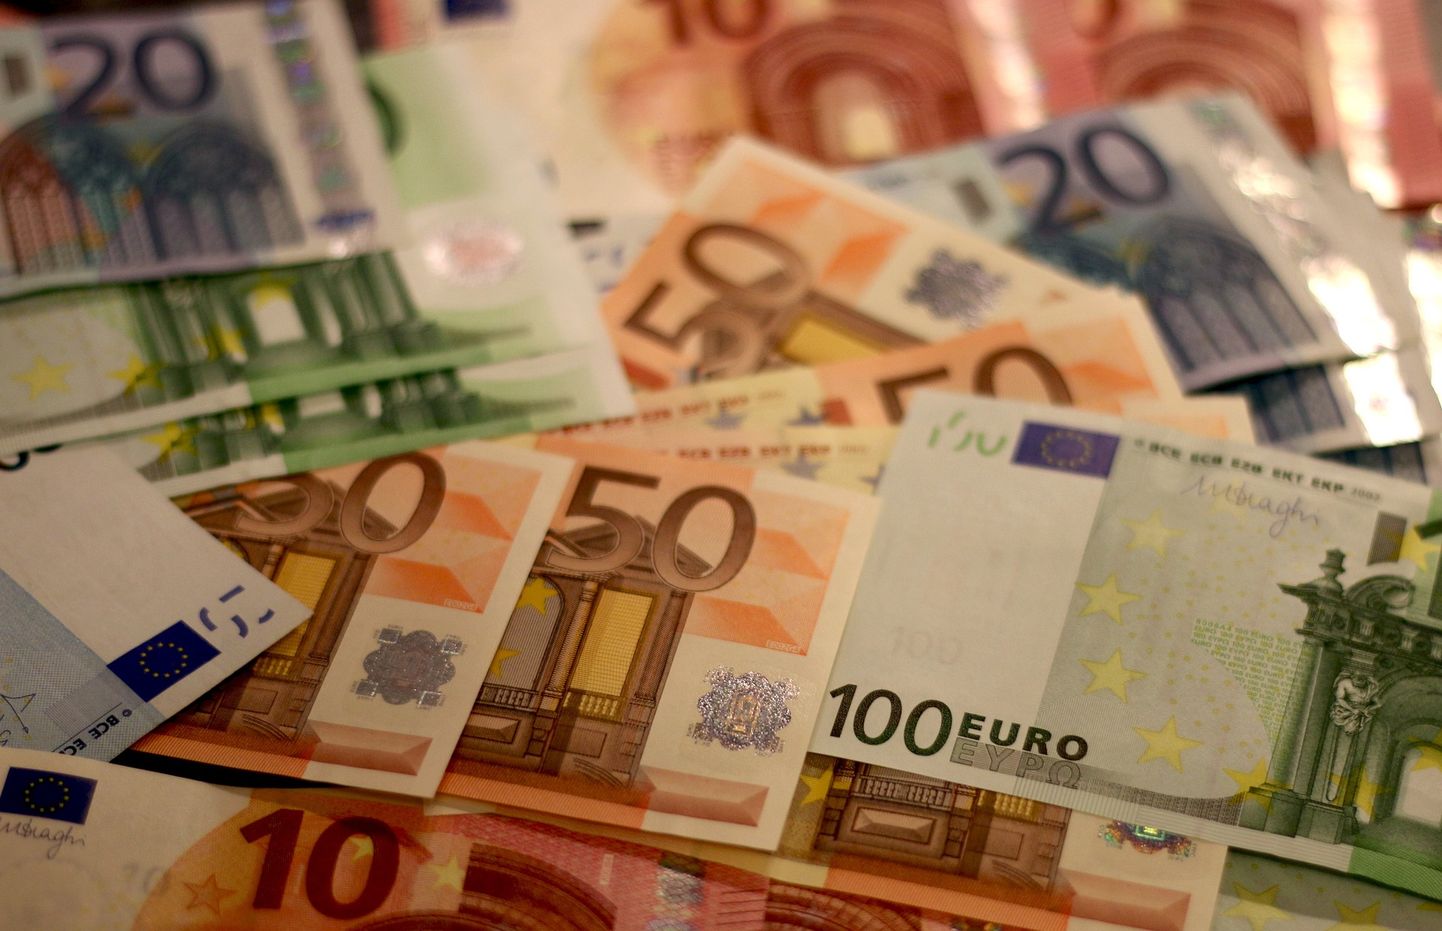 Eiro banknotes. Ilustratīvs attēls